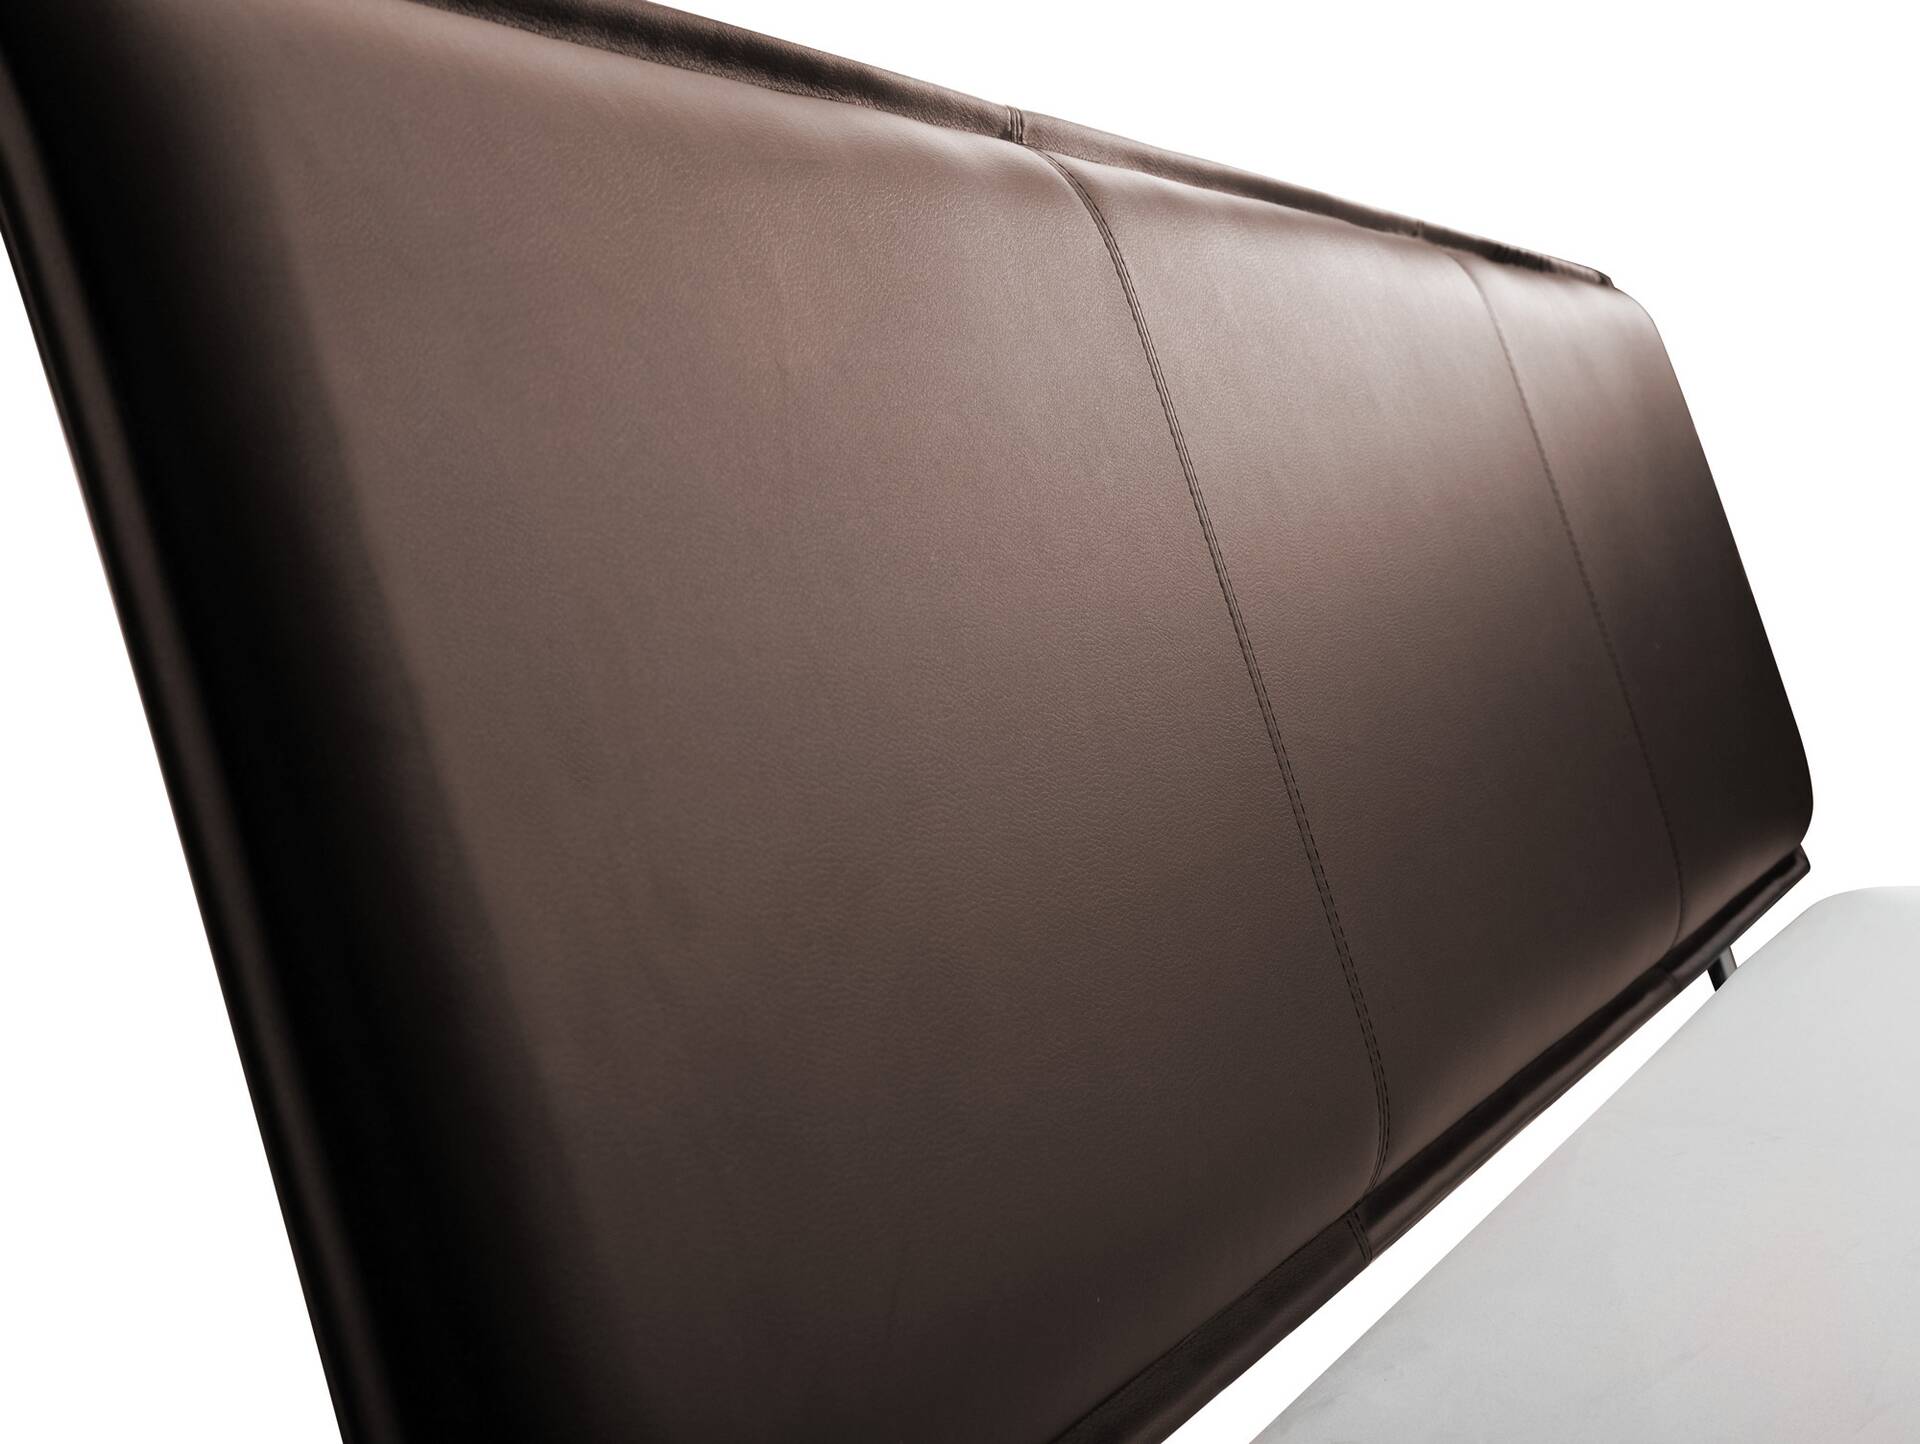 LUKY Bett Metallfuß, mit Polsterkopfteil, Material Massivholz, Fichte massiv 180 x 200 cm | weiss | Kunstleder Braun